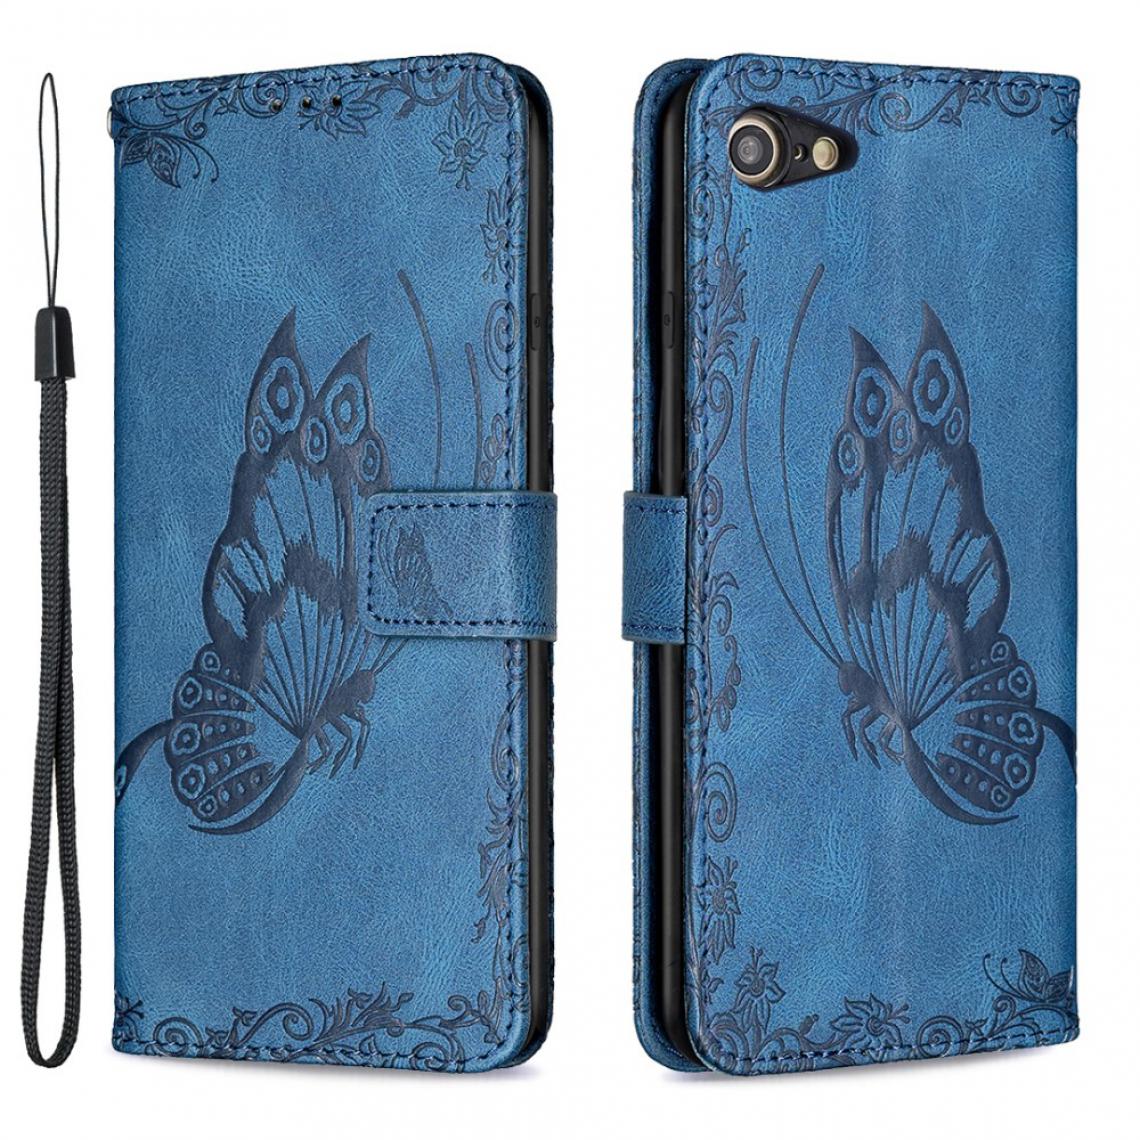 Other - Etui en PU Empreinte Papillon Fleur avec support bleu pour votre Apple iPhone SE (2nd Generation)/8/7 - Coque, étui smartphone